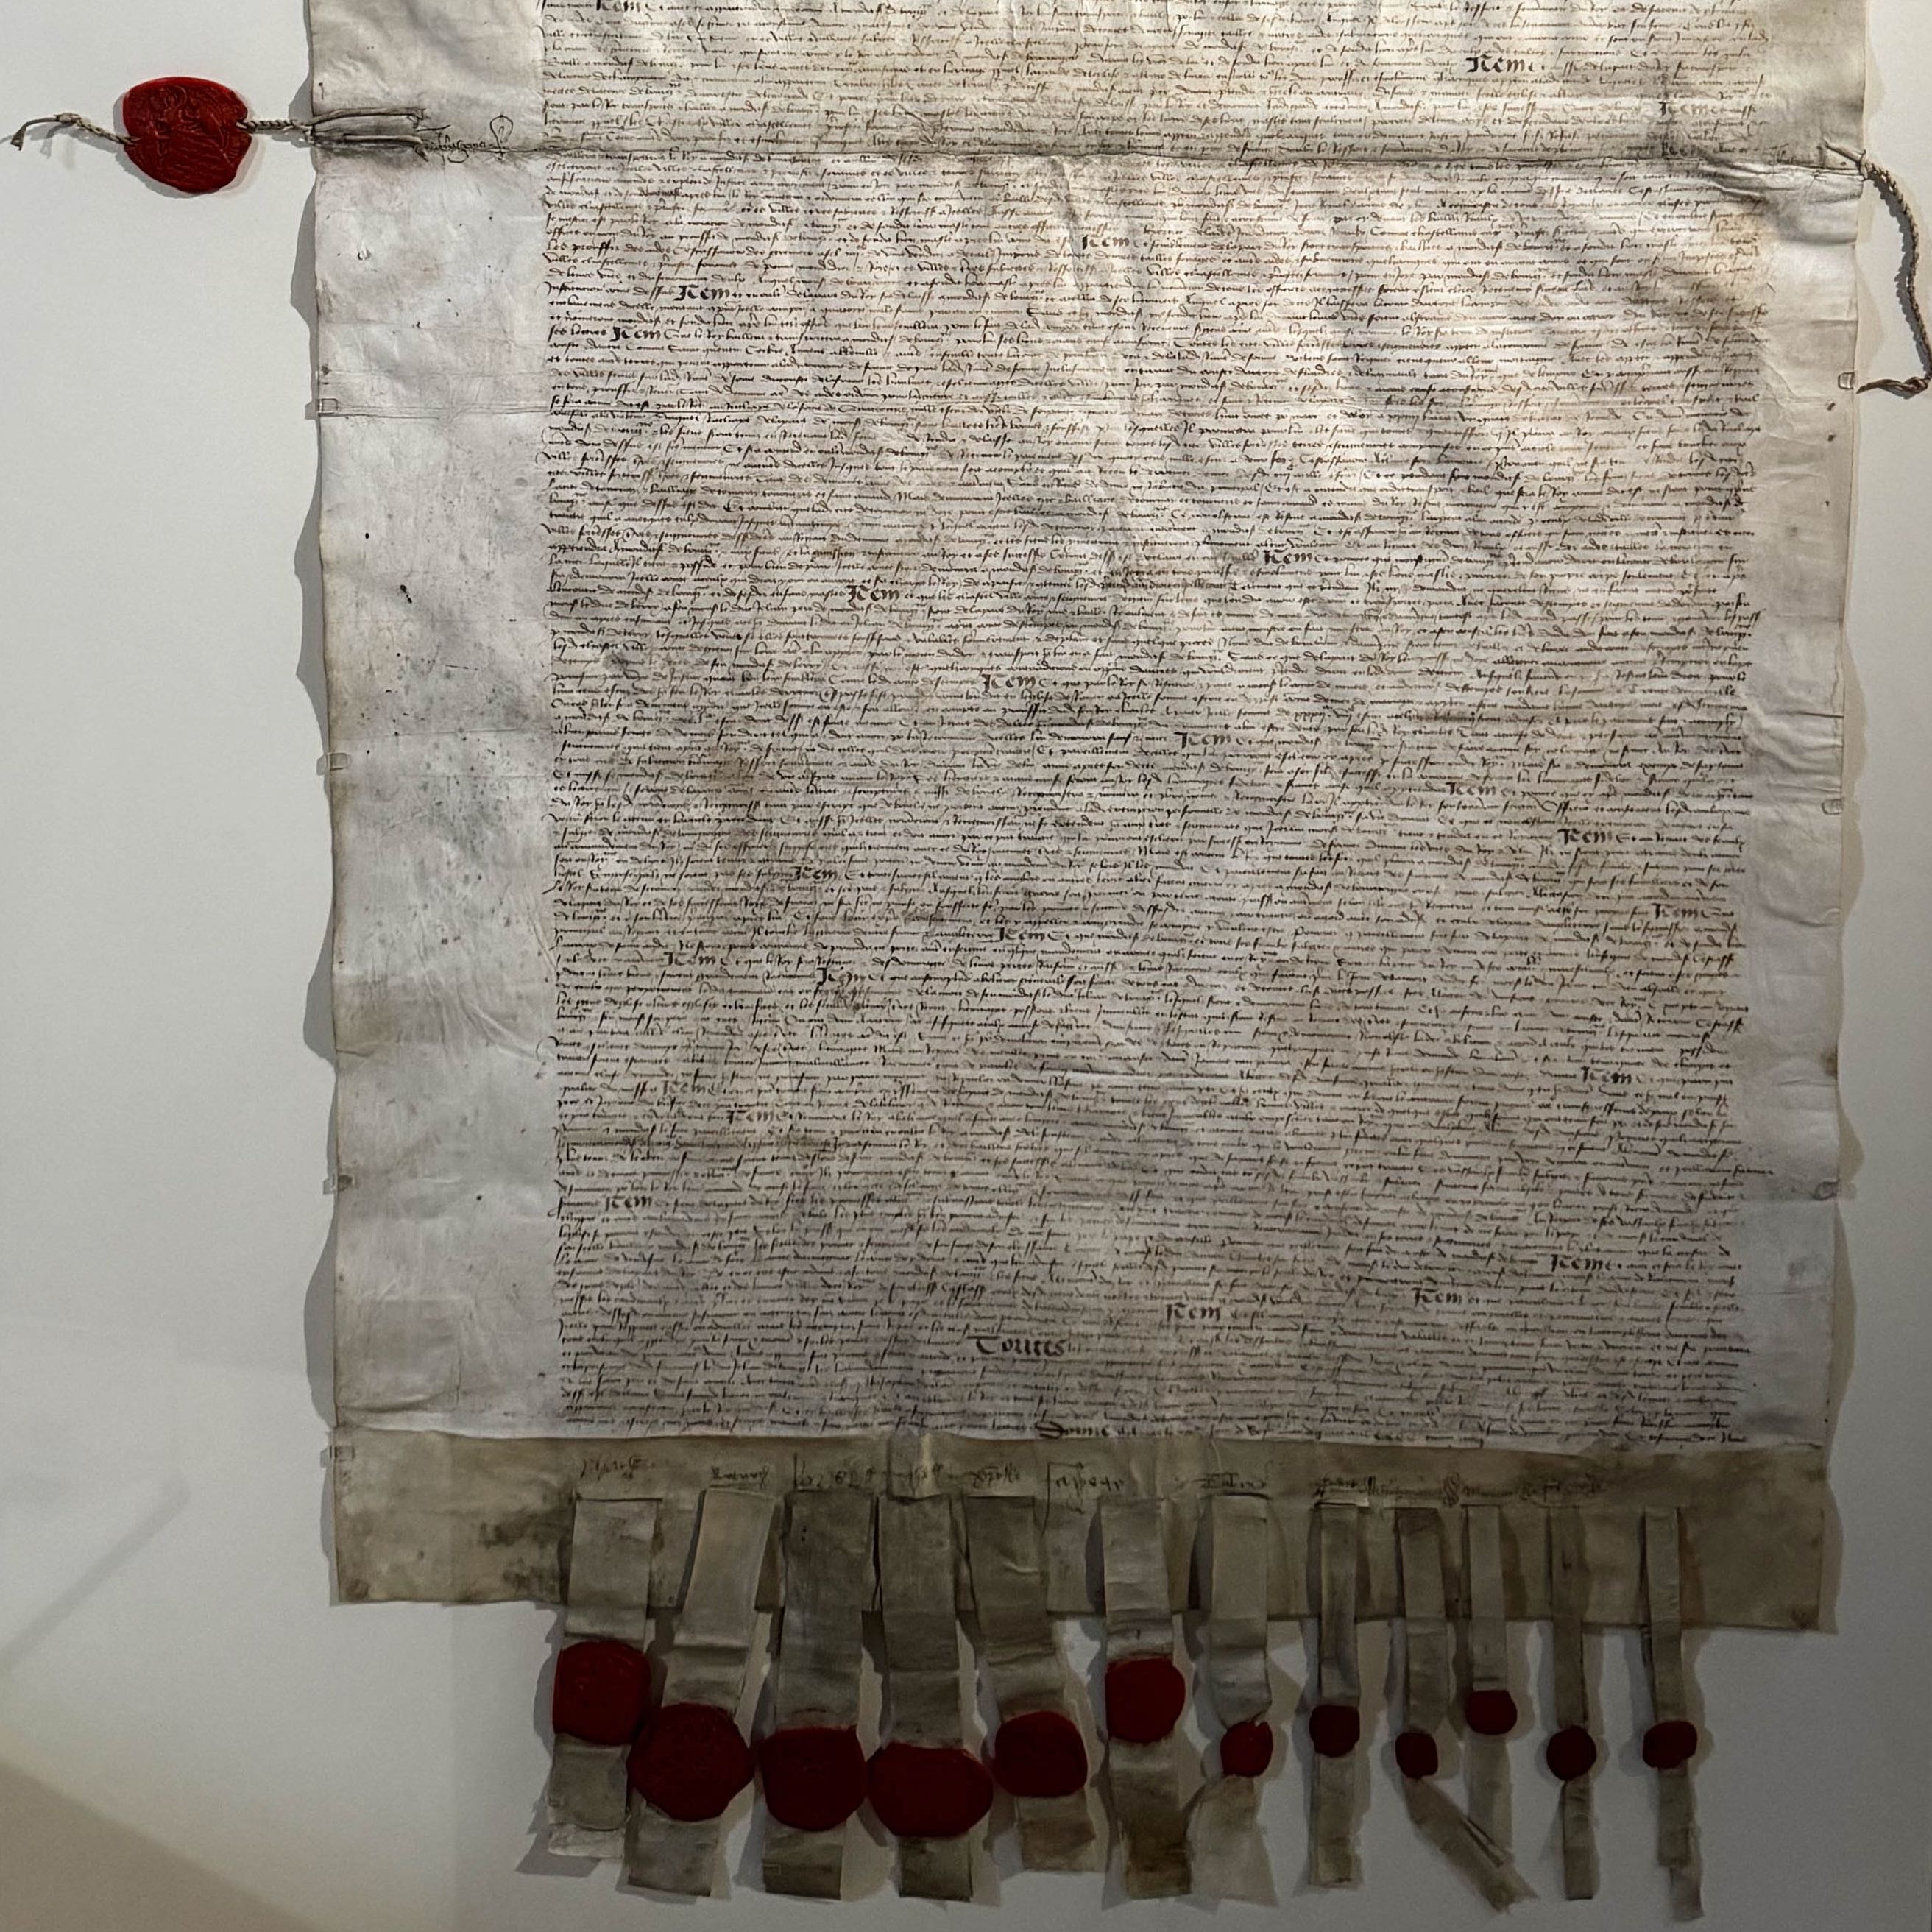 Traité de paix d’Arras (1435), BNF, Paris